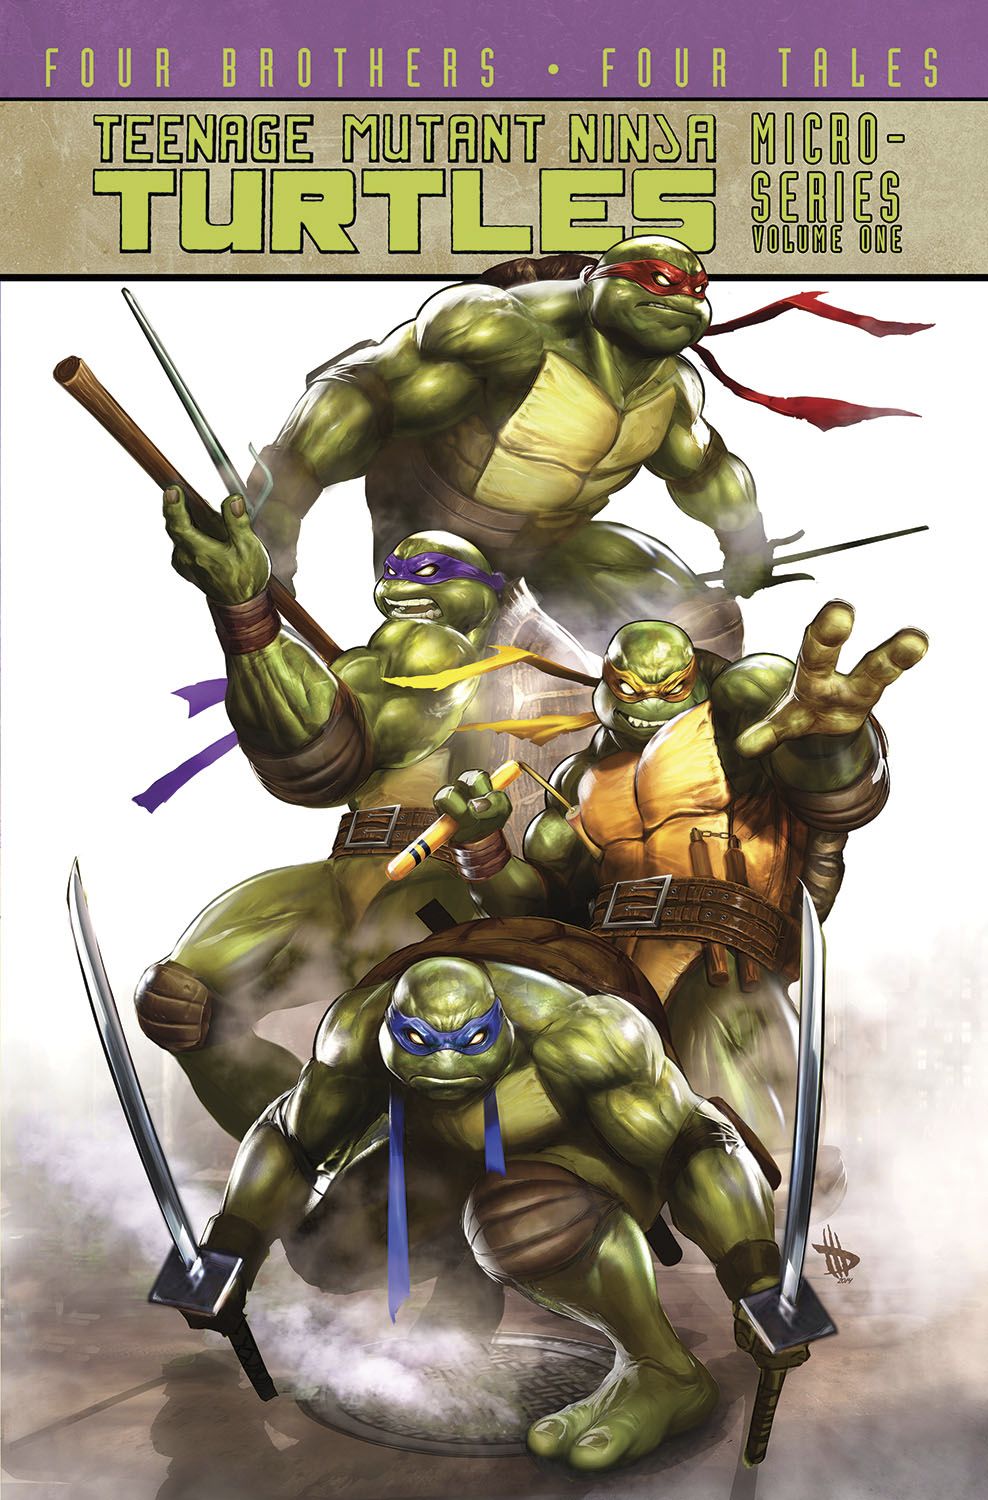 Teenage Mutant Ninja Turtles Micro Series TP VOL 01